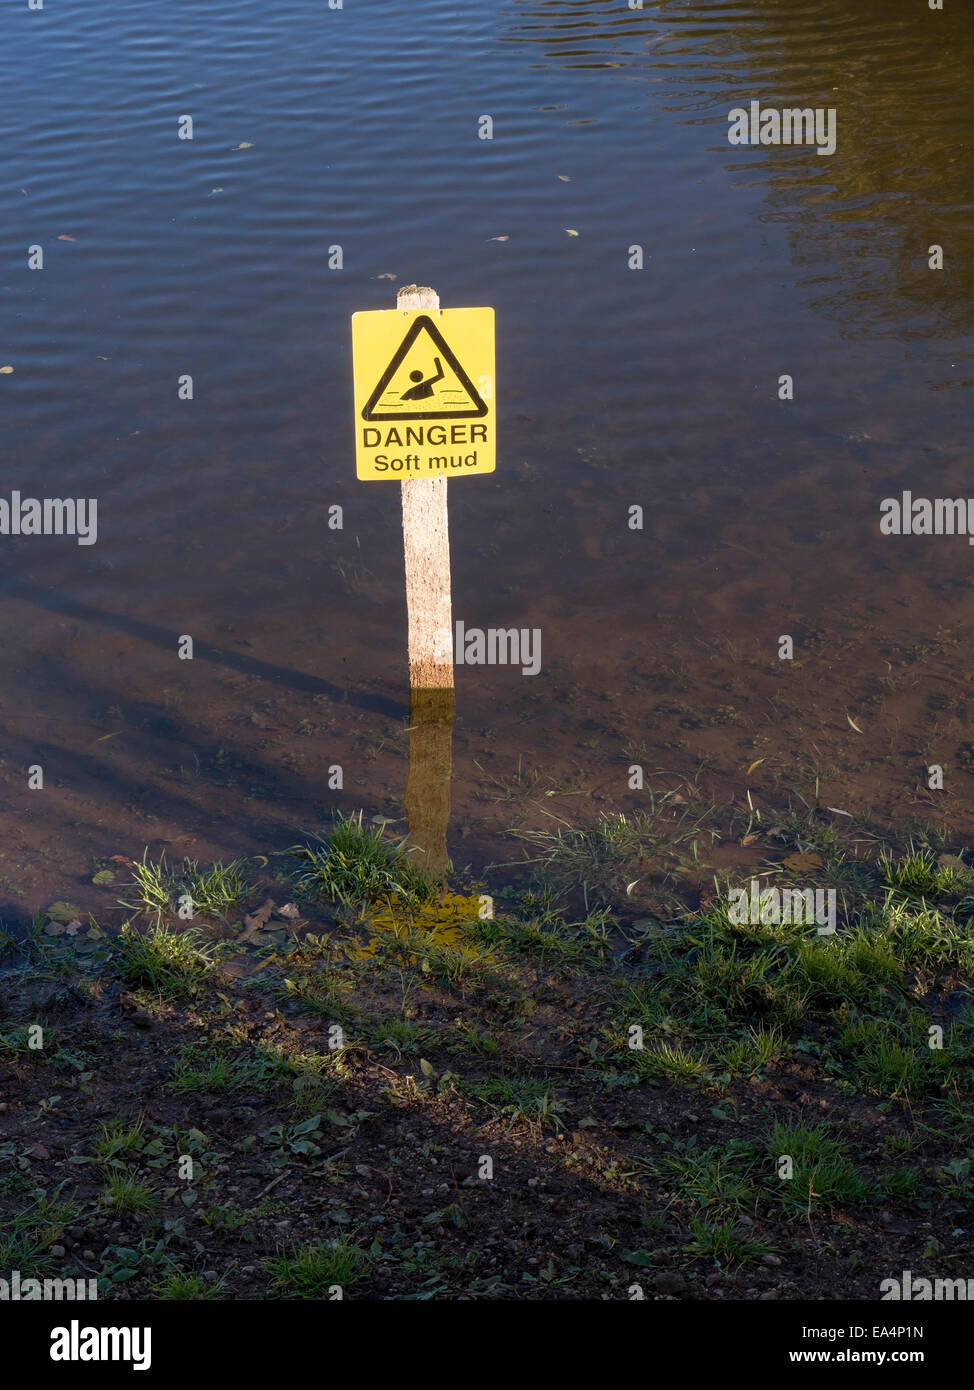 Pericolo fango morbido segno di avvertimento, Staunton Harold serbatoio, Derbyshire, England, Regno Unito Foto Stock